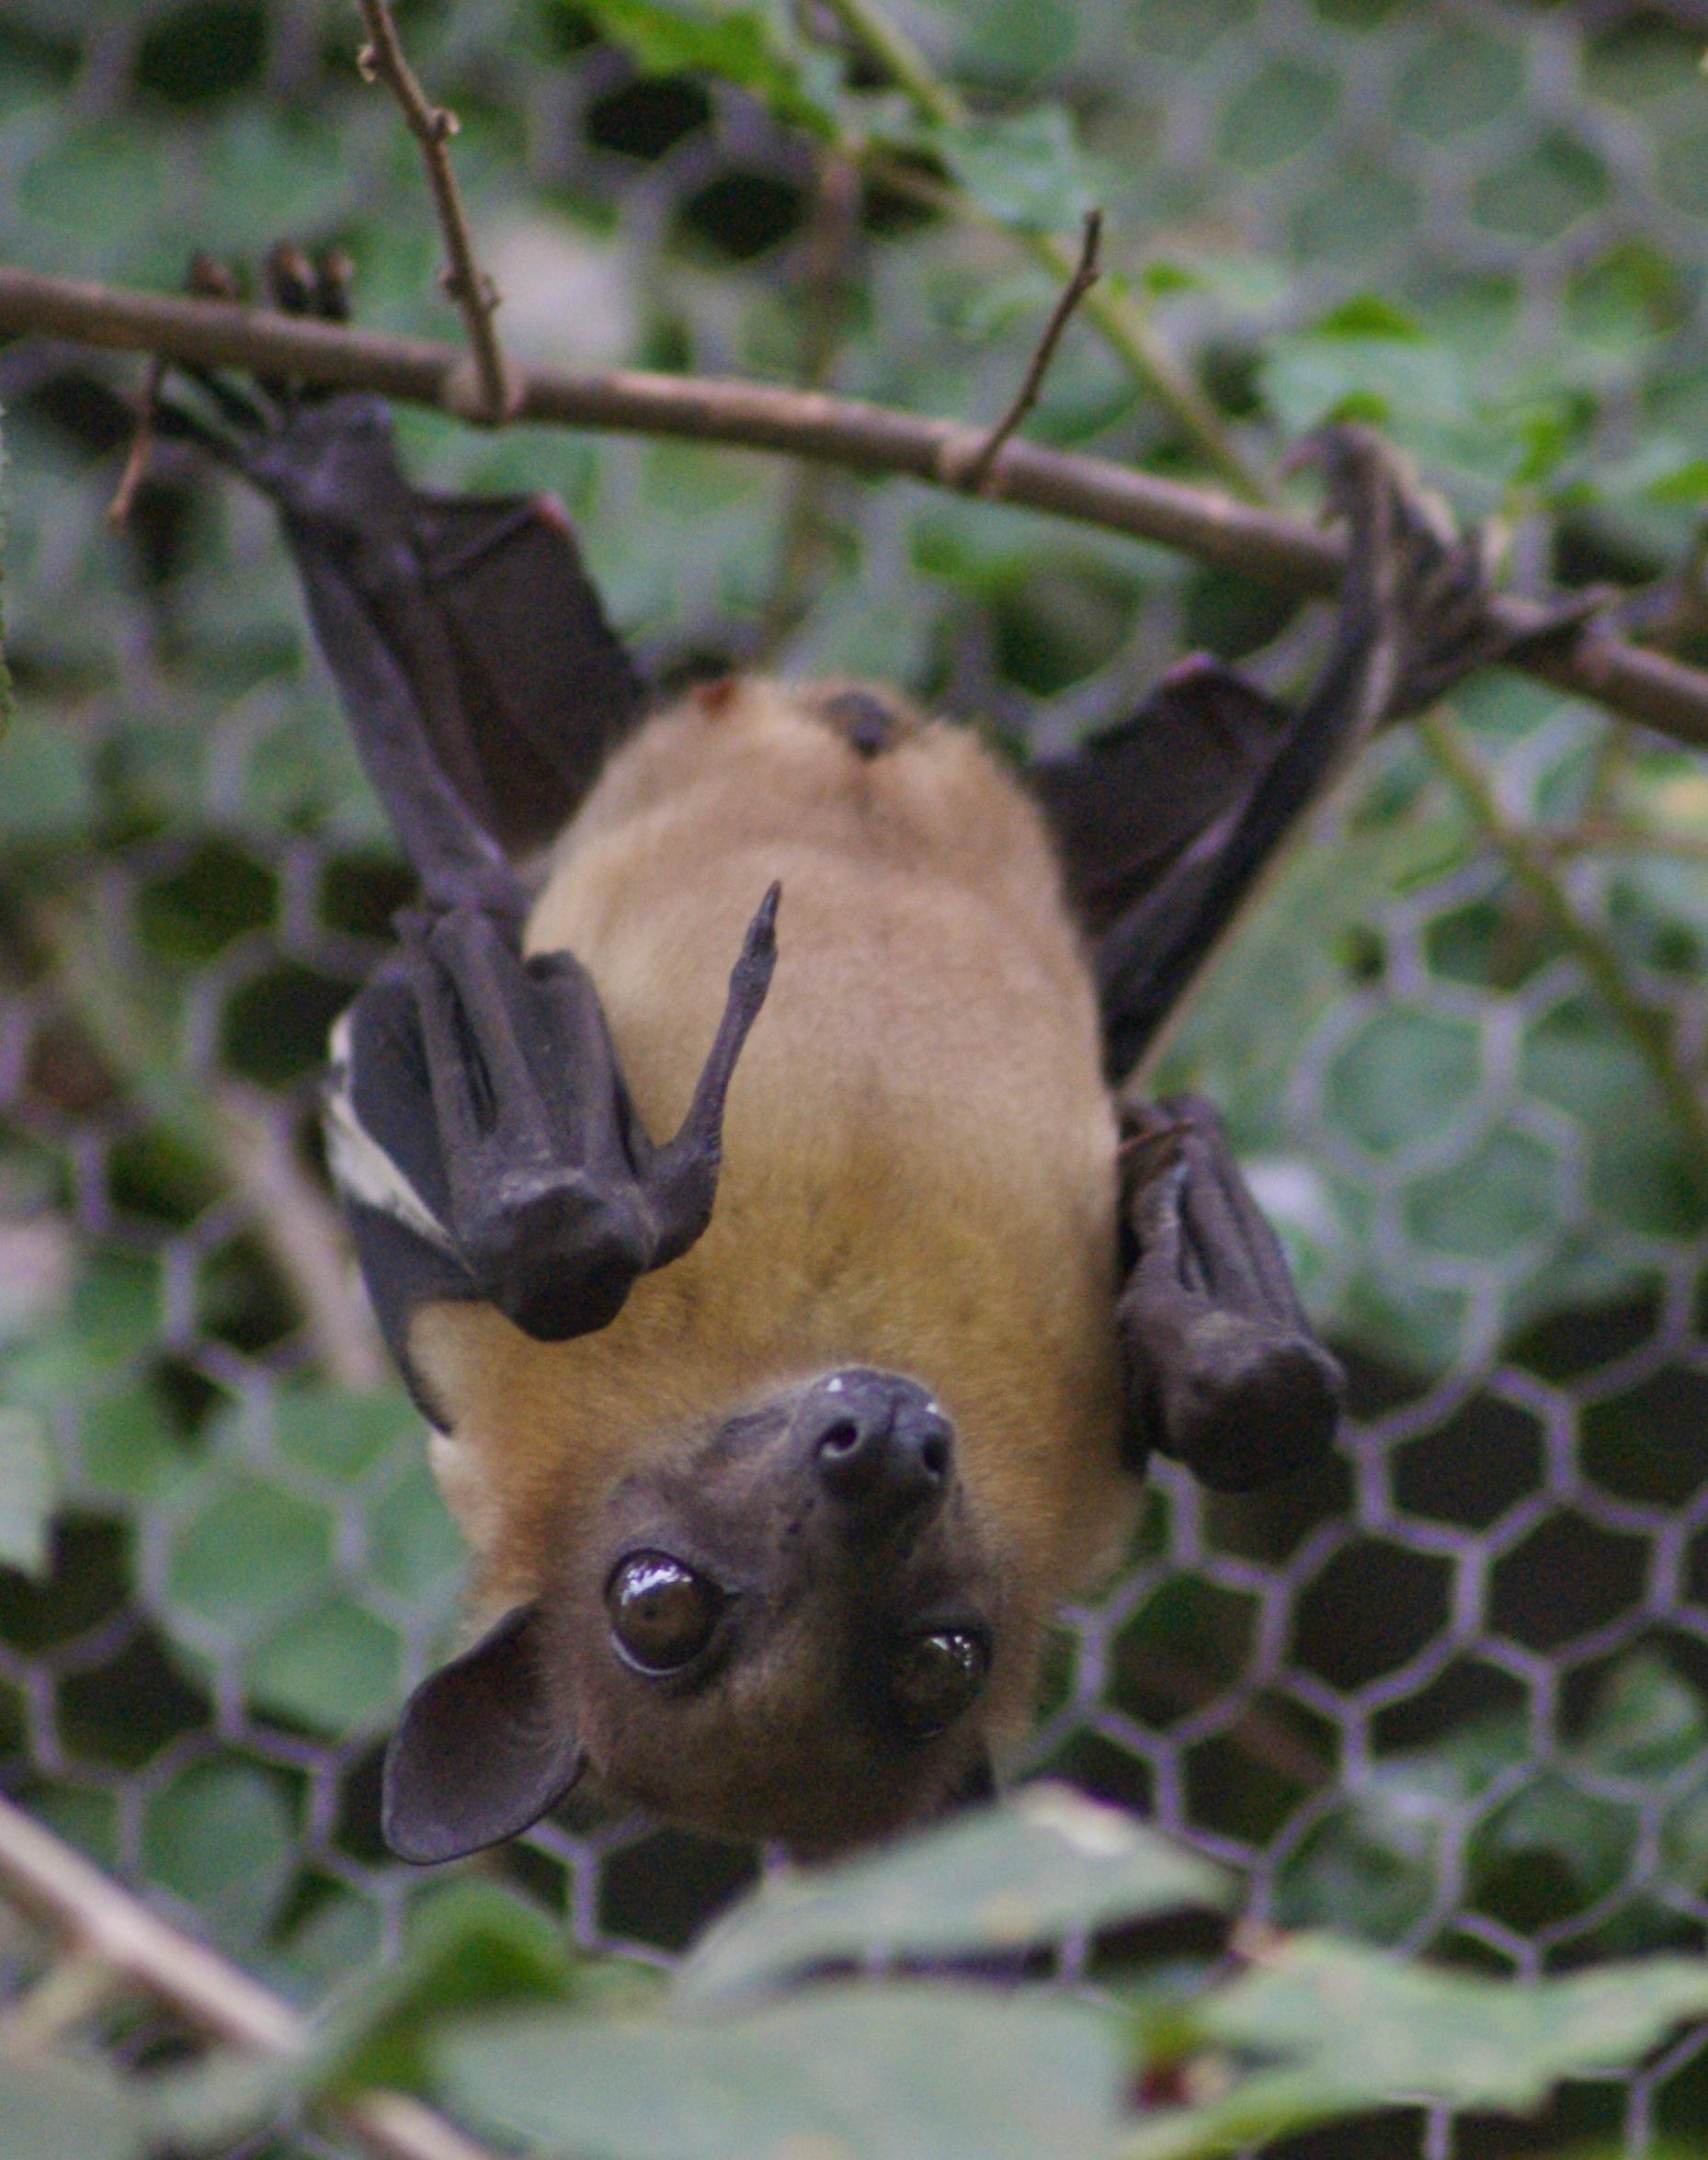 Bats and Bugs at the Royal Society